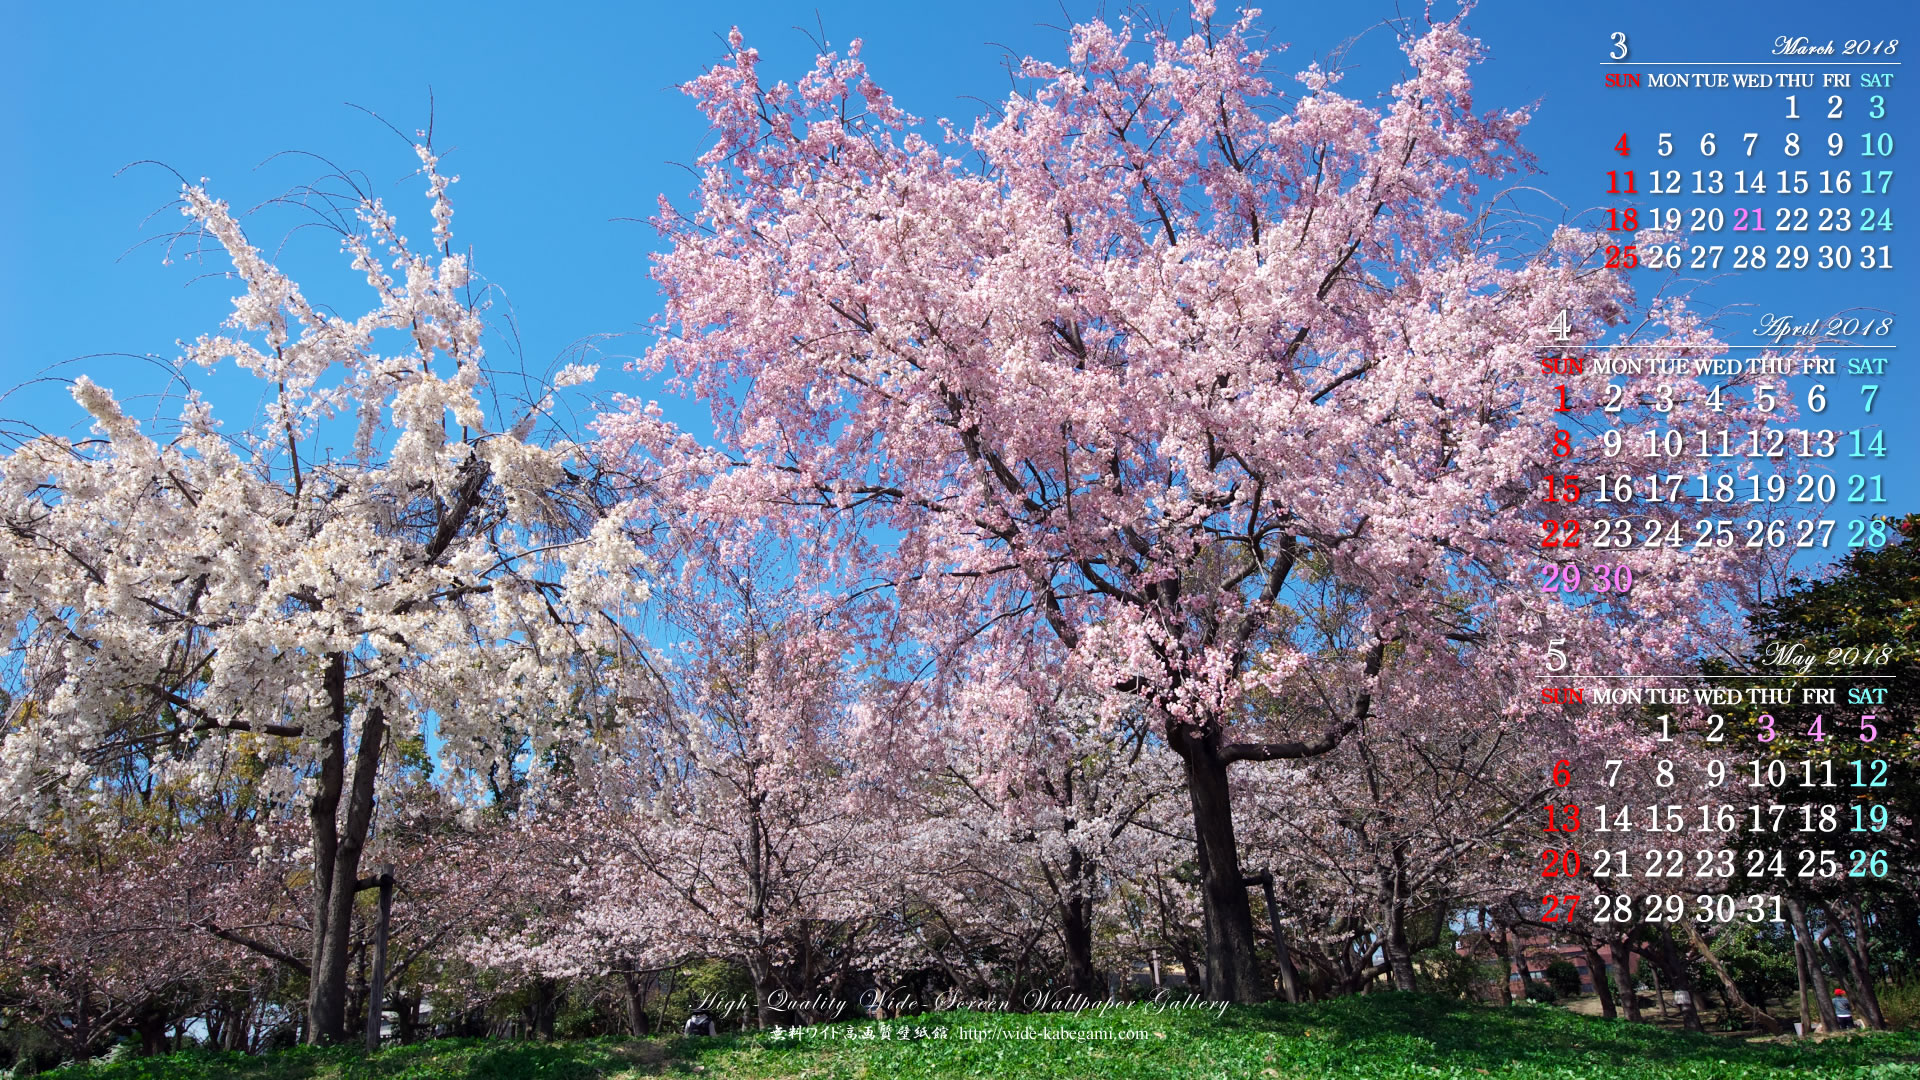 18年4月の自然カレンダー壁紙 桜のある風景 1 無料ワイド高画質壁紙館